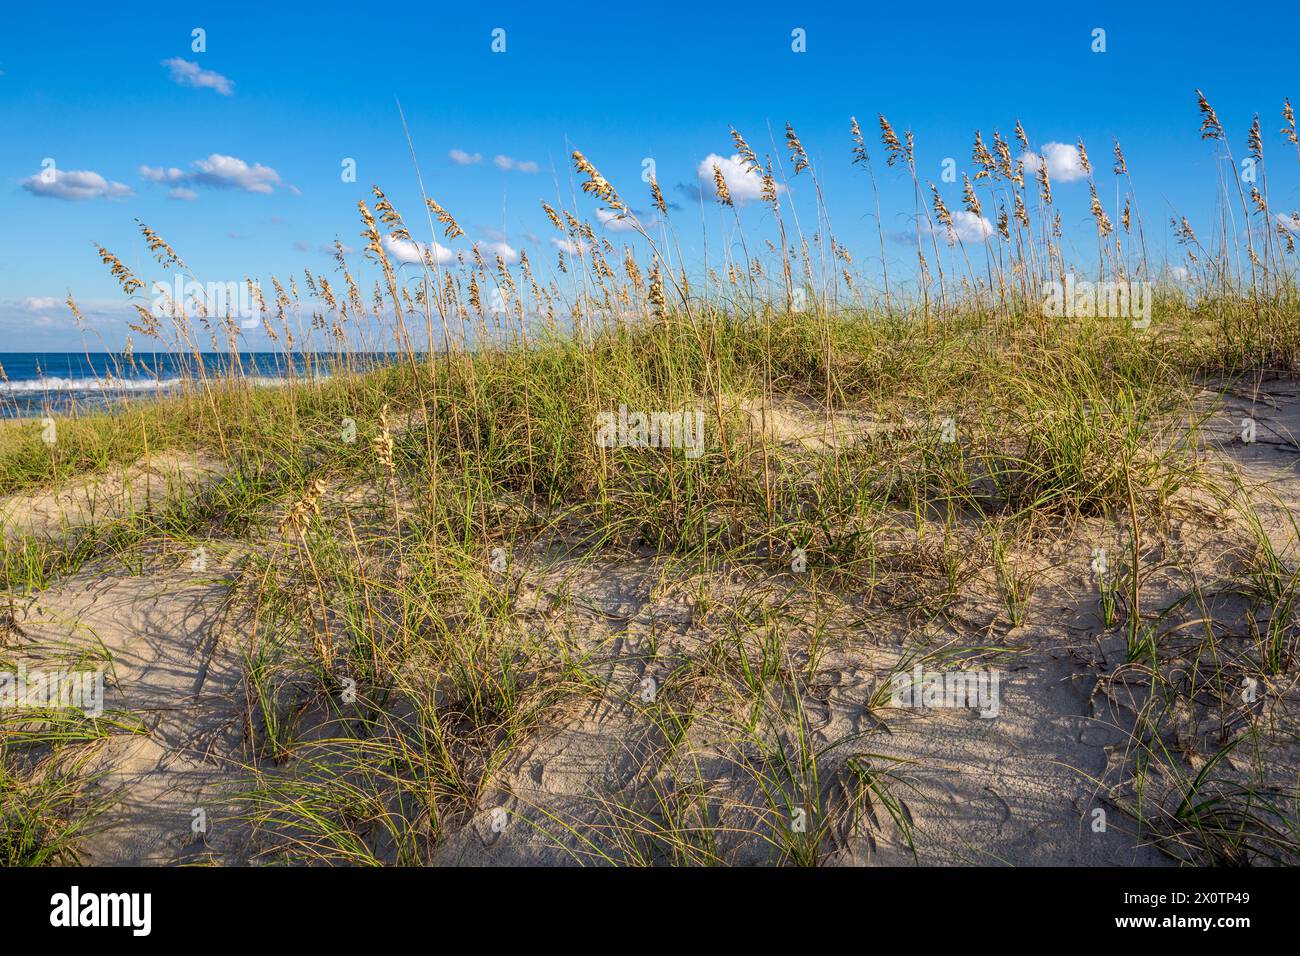 Outer Banks, Avon, North Carolina. Mare di avena (Uniola paniculata) stabilizza la sabbia lungo la spiaggia. Oceano atlantico in background. Foto Stock